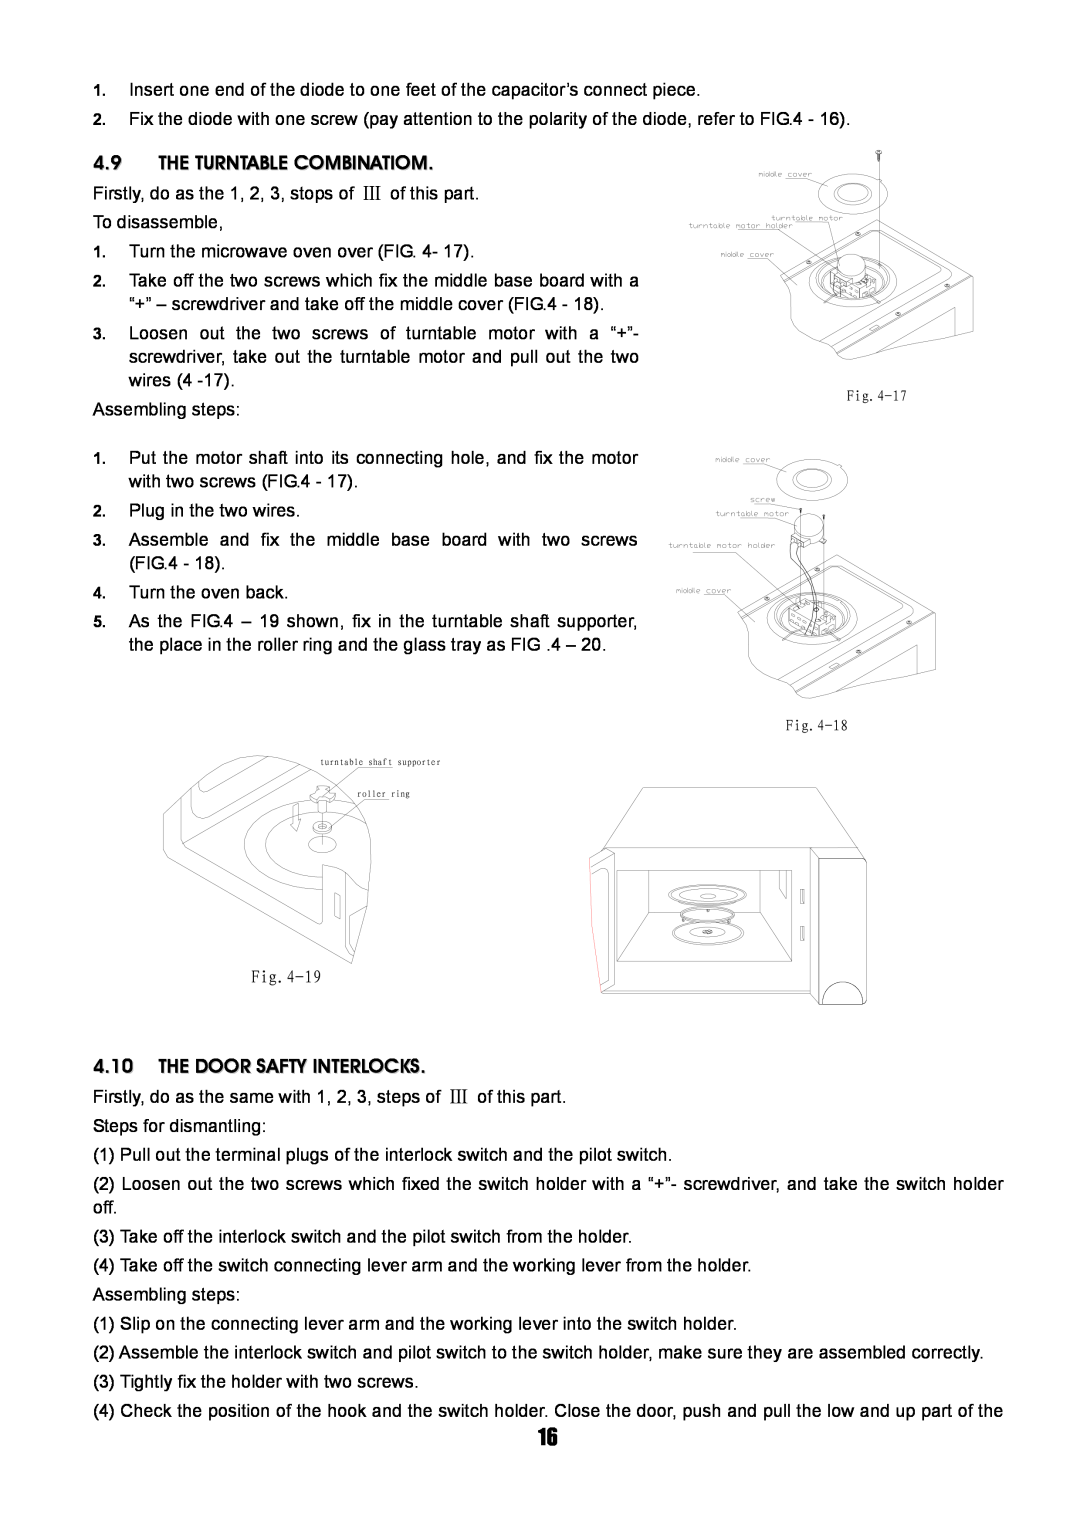 Sanyo SM-GA0005 service manual The Turntable Combinatiom, 4.10THE DOOR SAFTY INTERLOCKS 